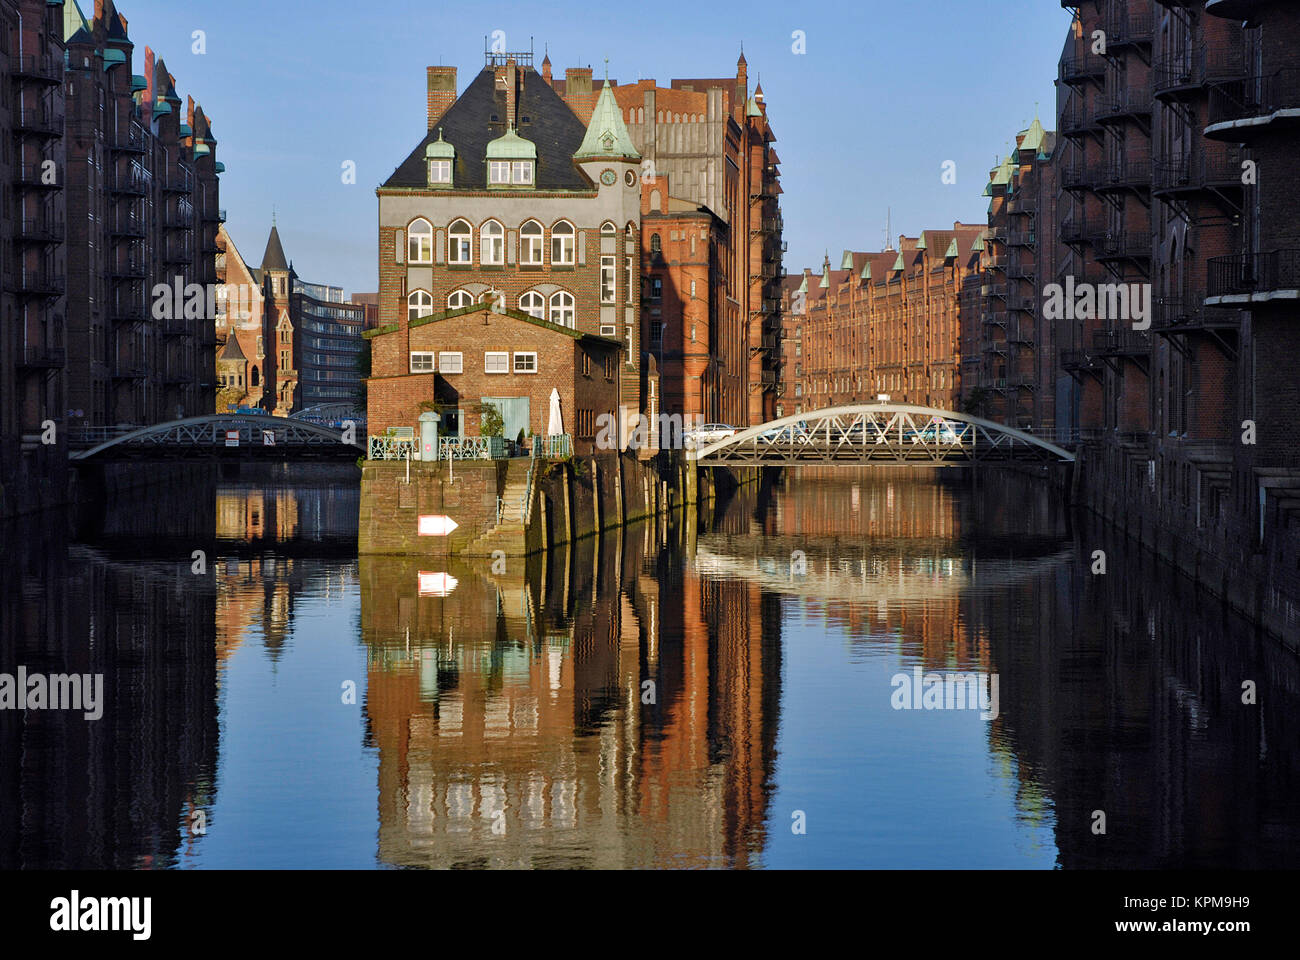 Hambourg, un des plus beaux et des plus populaires destinations touristiques au monde. Speicherstadt, patrimoine culturel mondial. Château d'eau. Banque D'Images